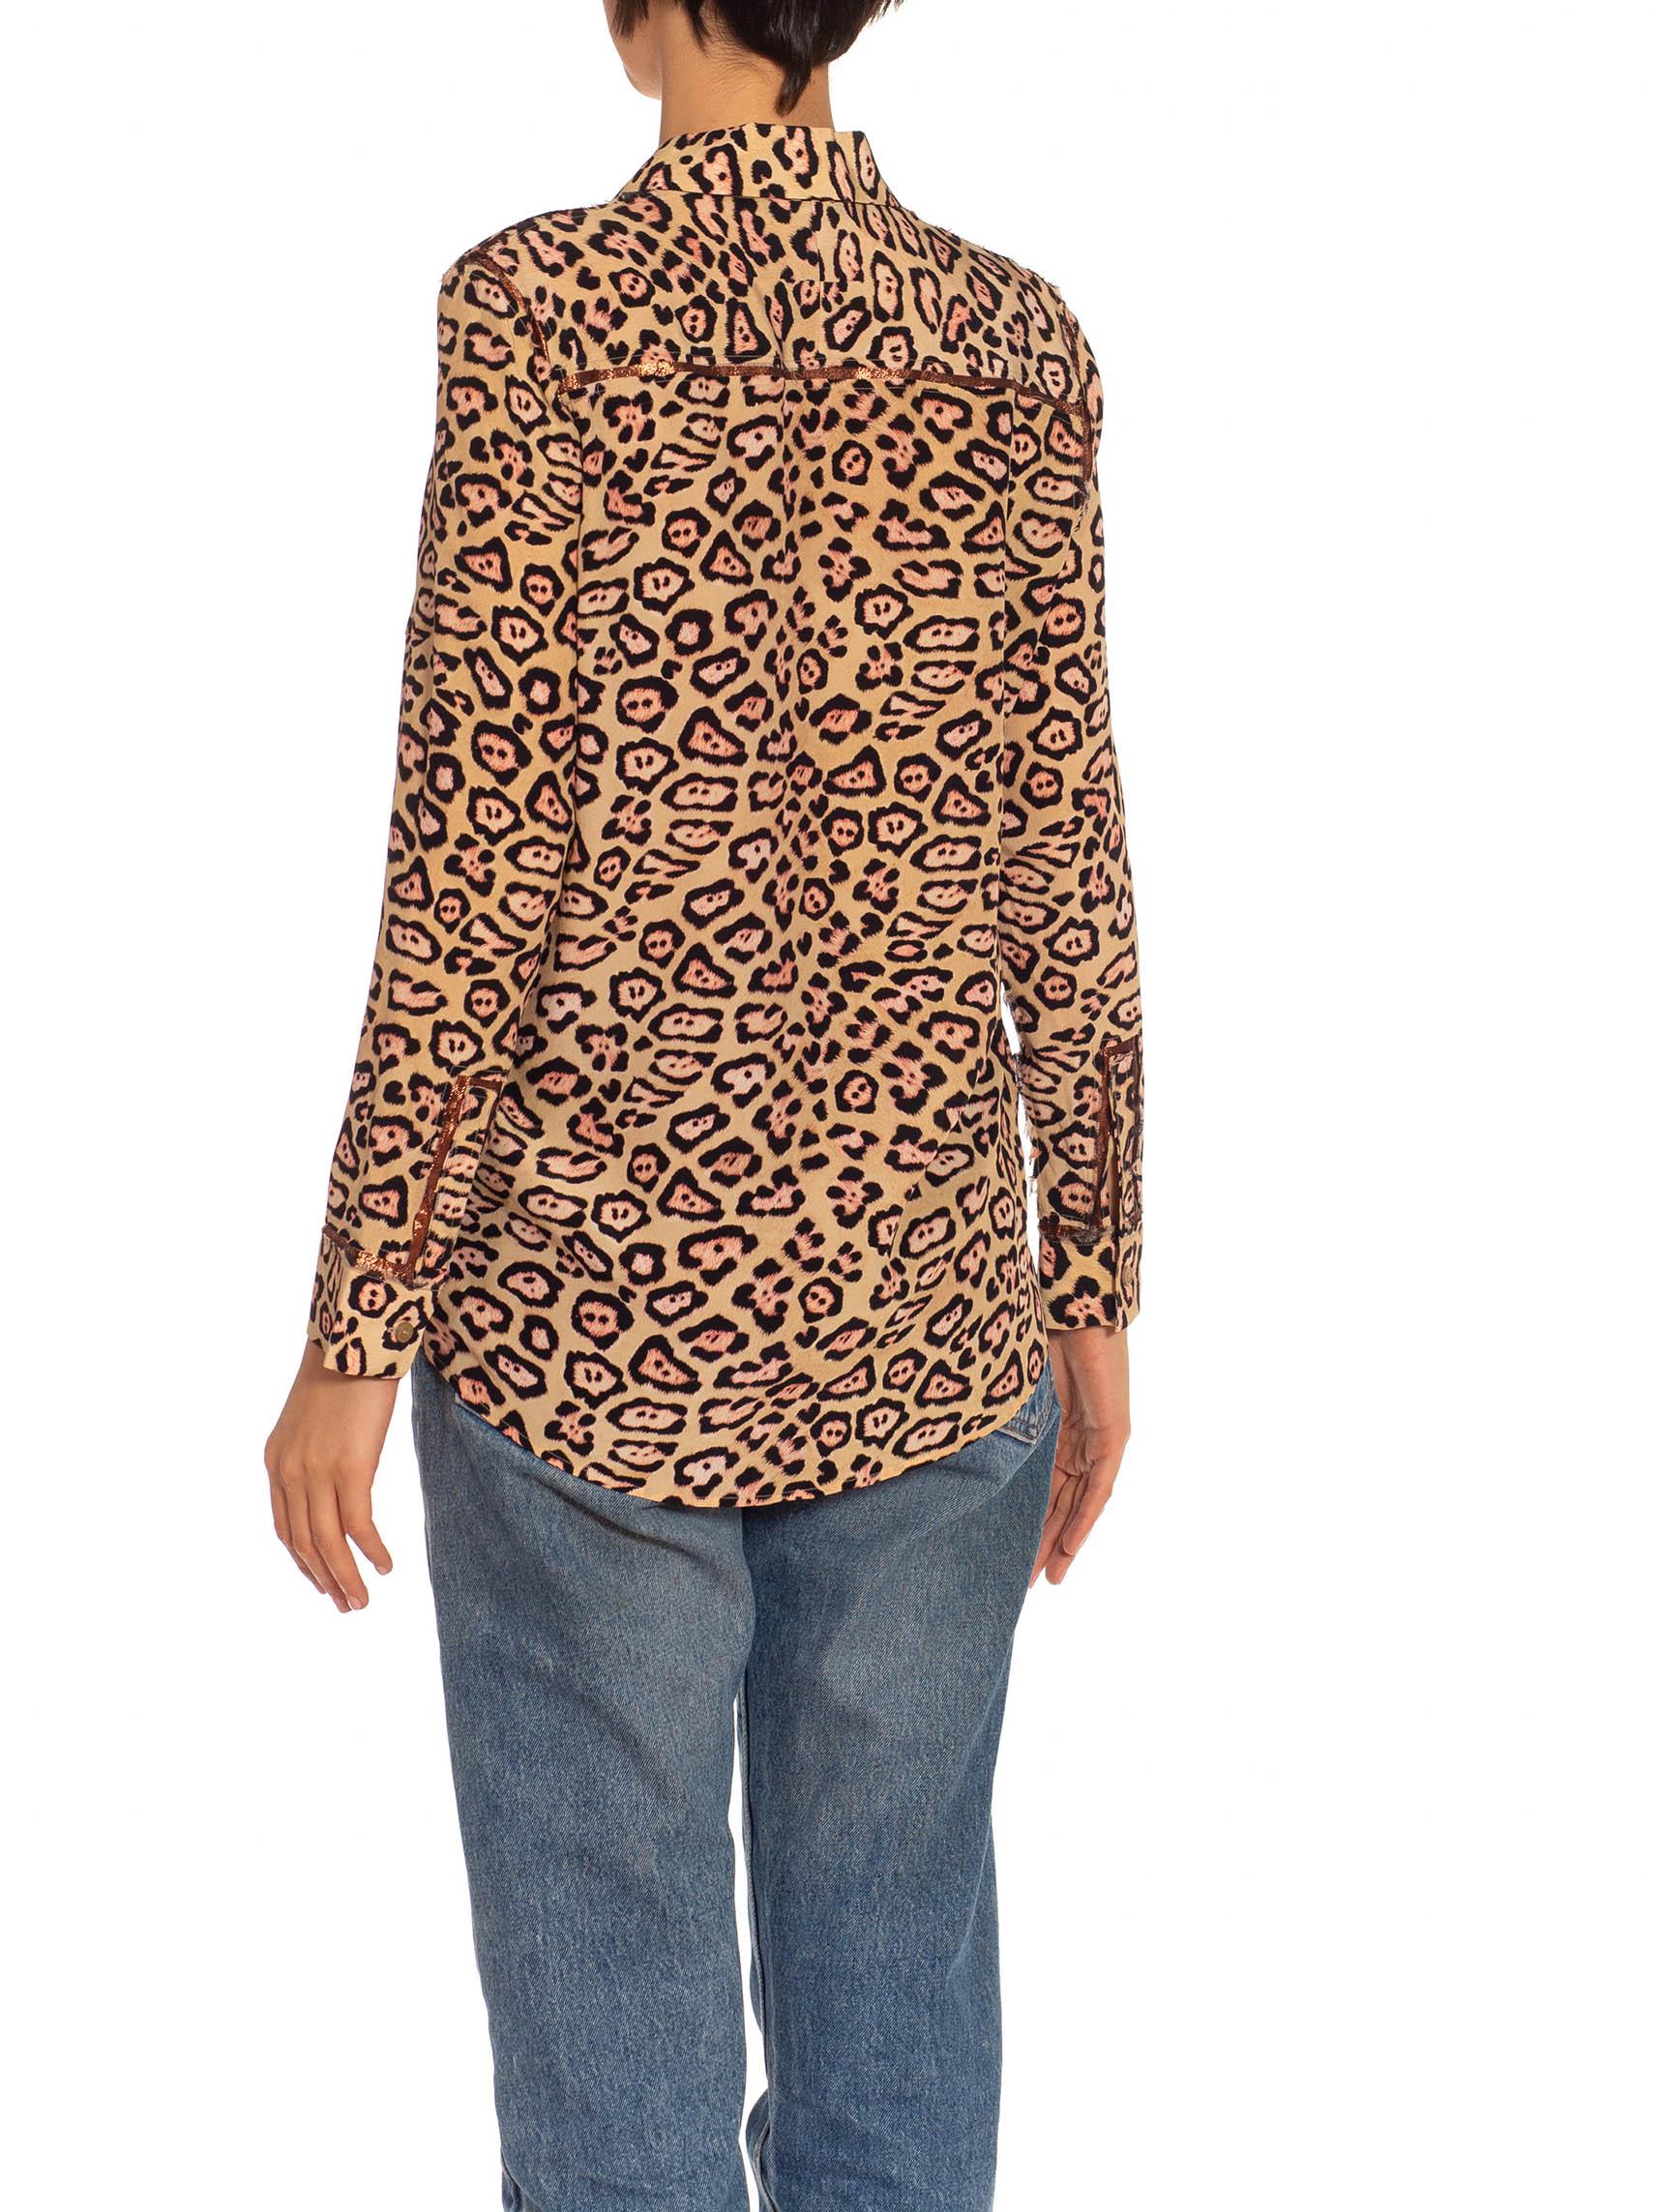 Chemise GIVENCHY en soie imprimée léopard beige et marron avec bordures métalliques, années 2010 Pour femmes en vente